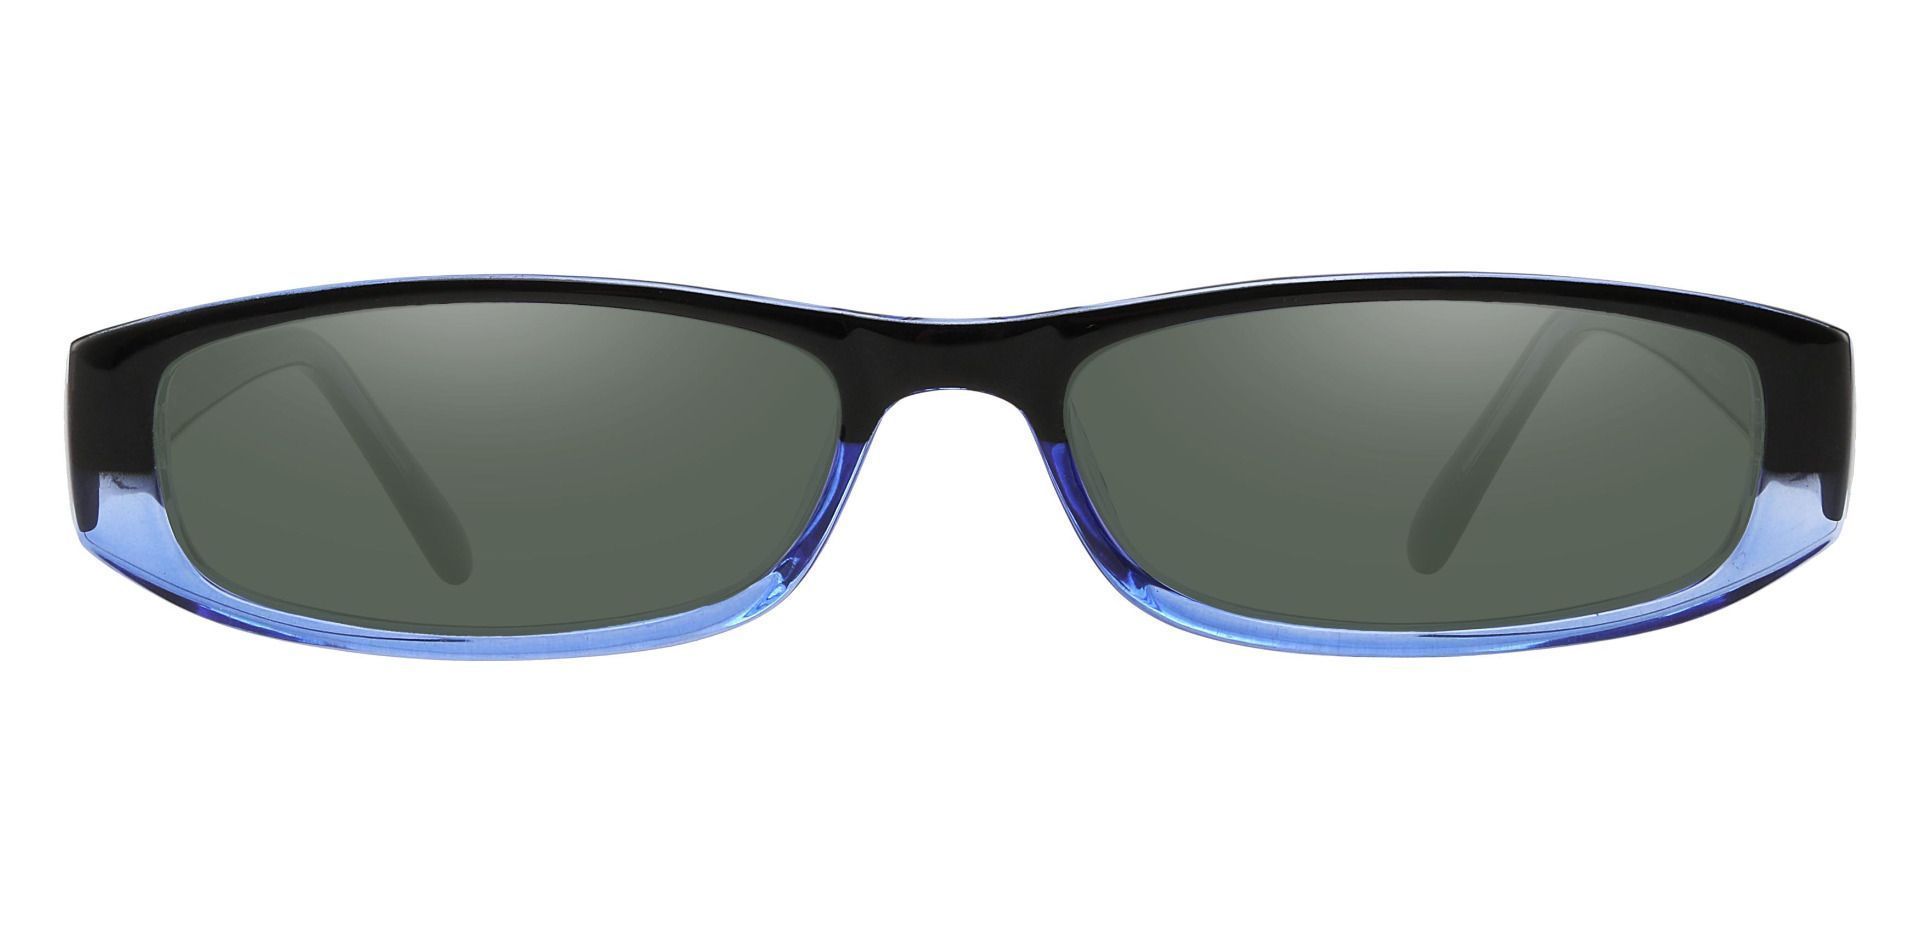 Elgin Rectangle Reading Sunglasses - Blue Frame With Green Lenses